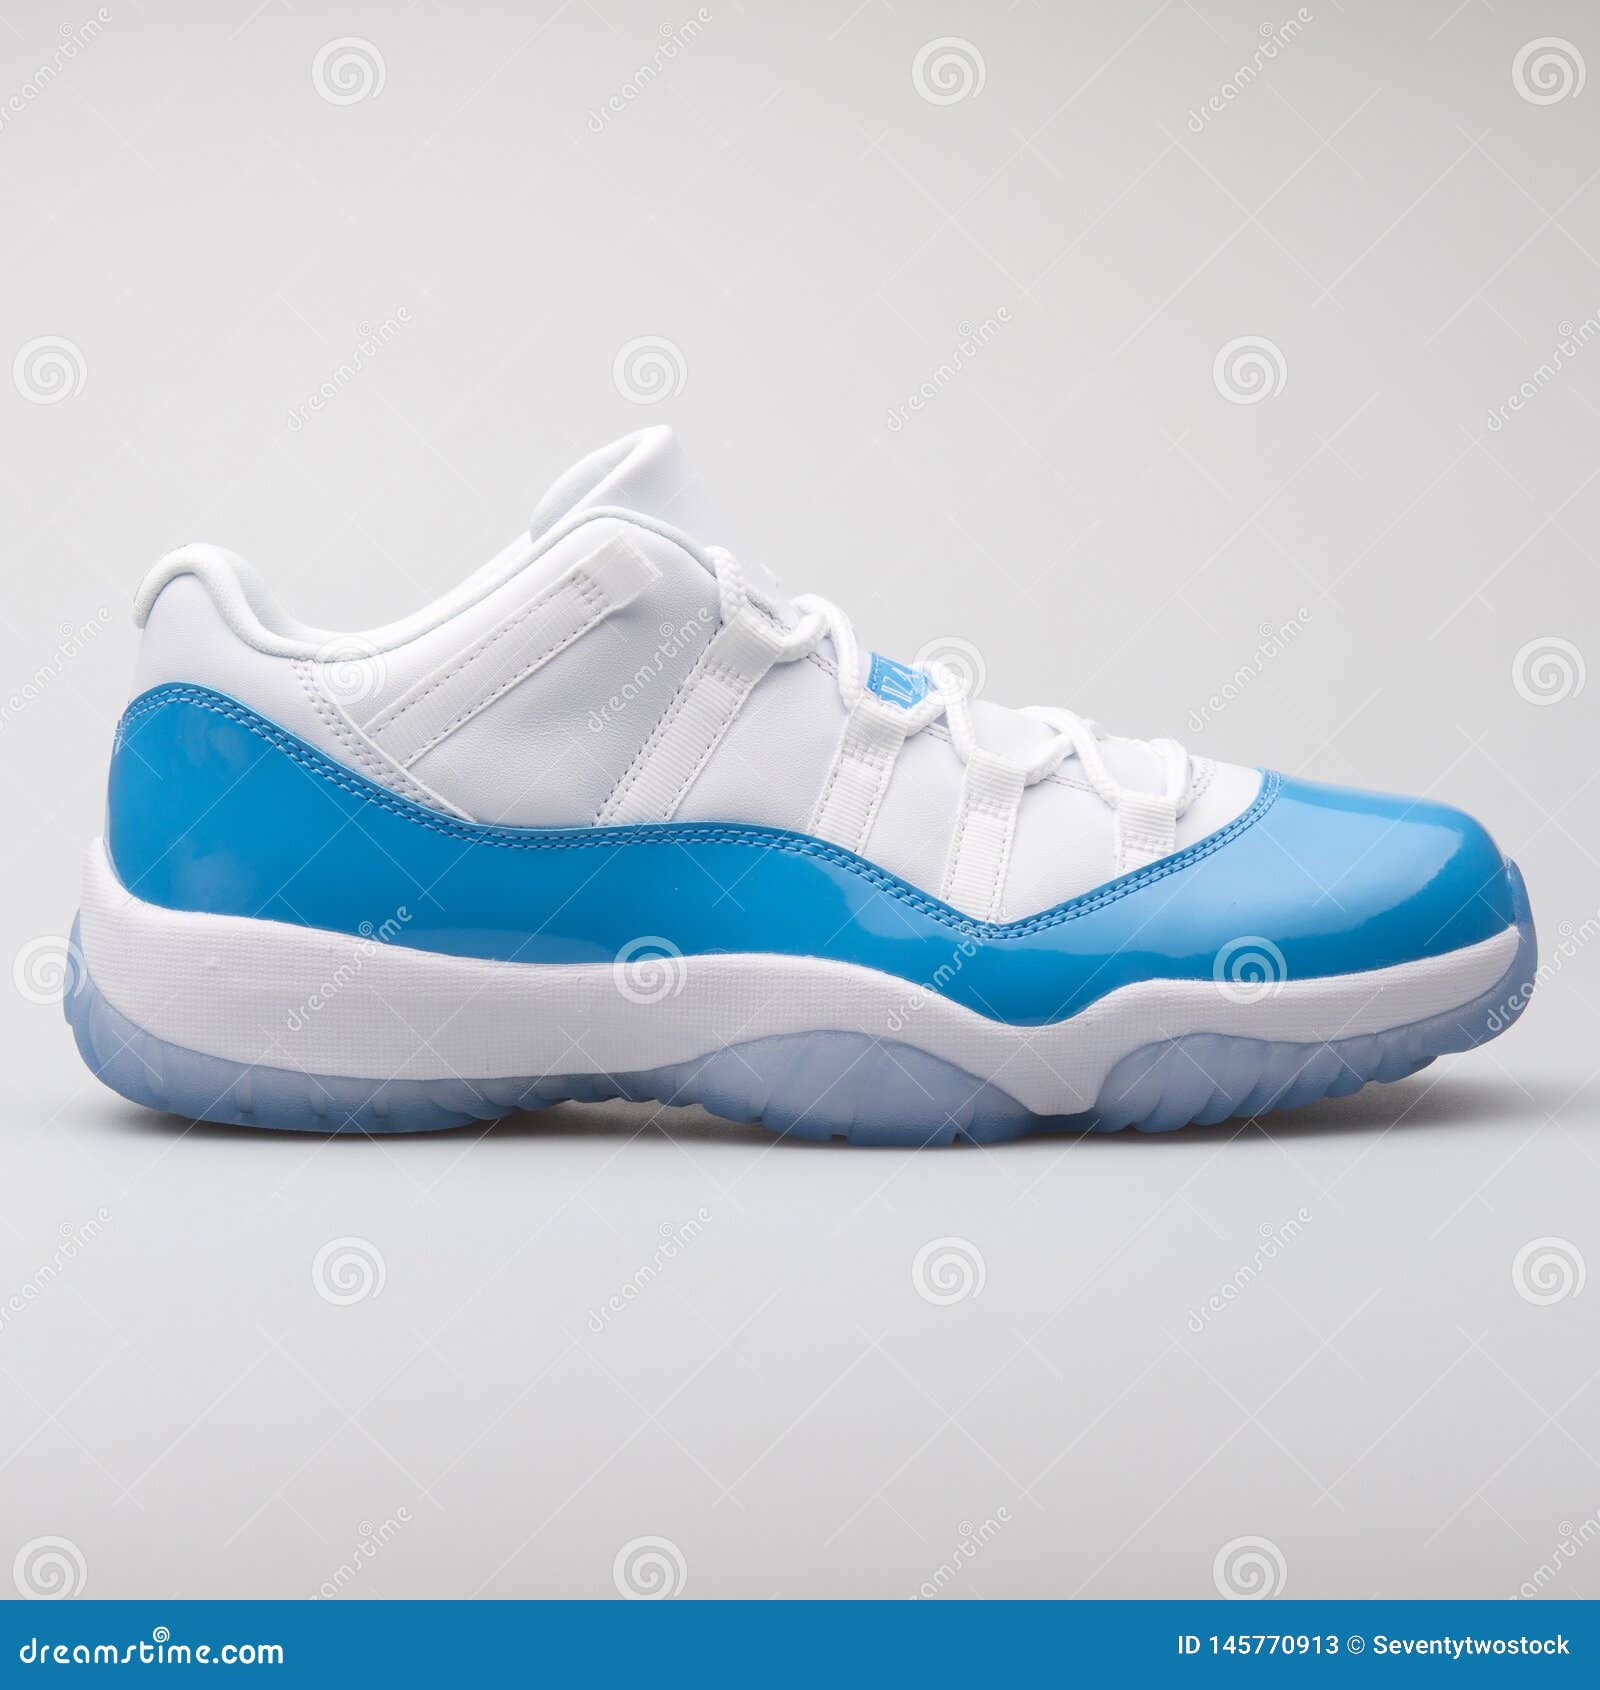 Nike Air 11 Zapatillas De Blancas Y Azules Bajas Foto de archivo editorial - Imagen de producto: 145770913